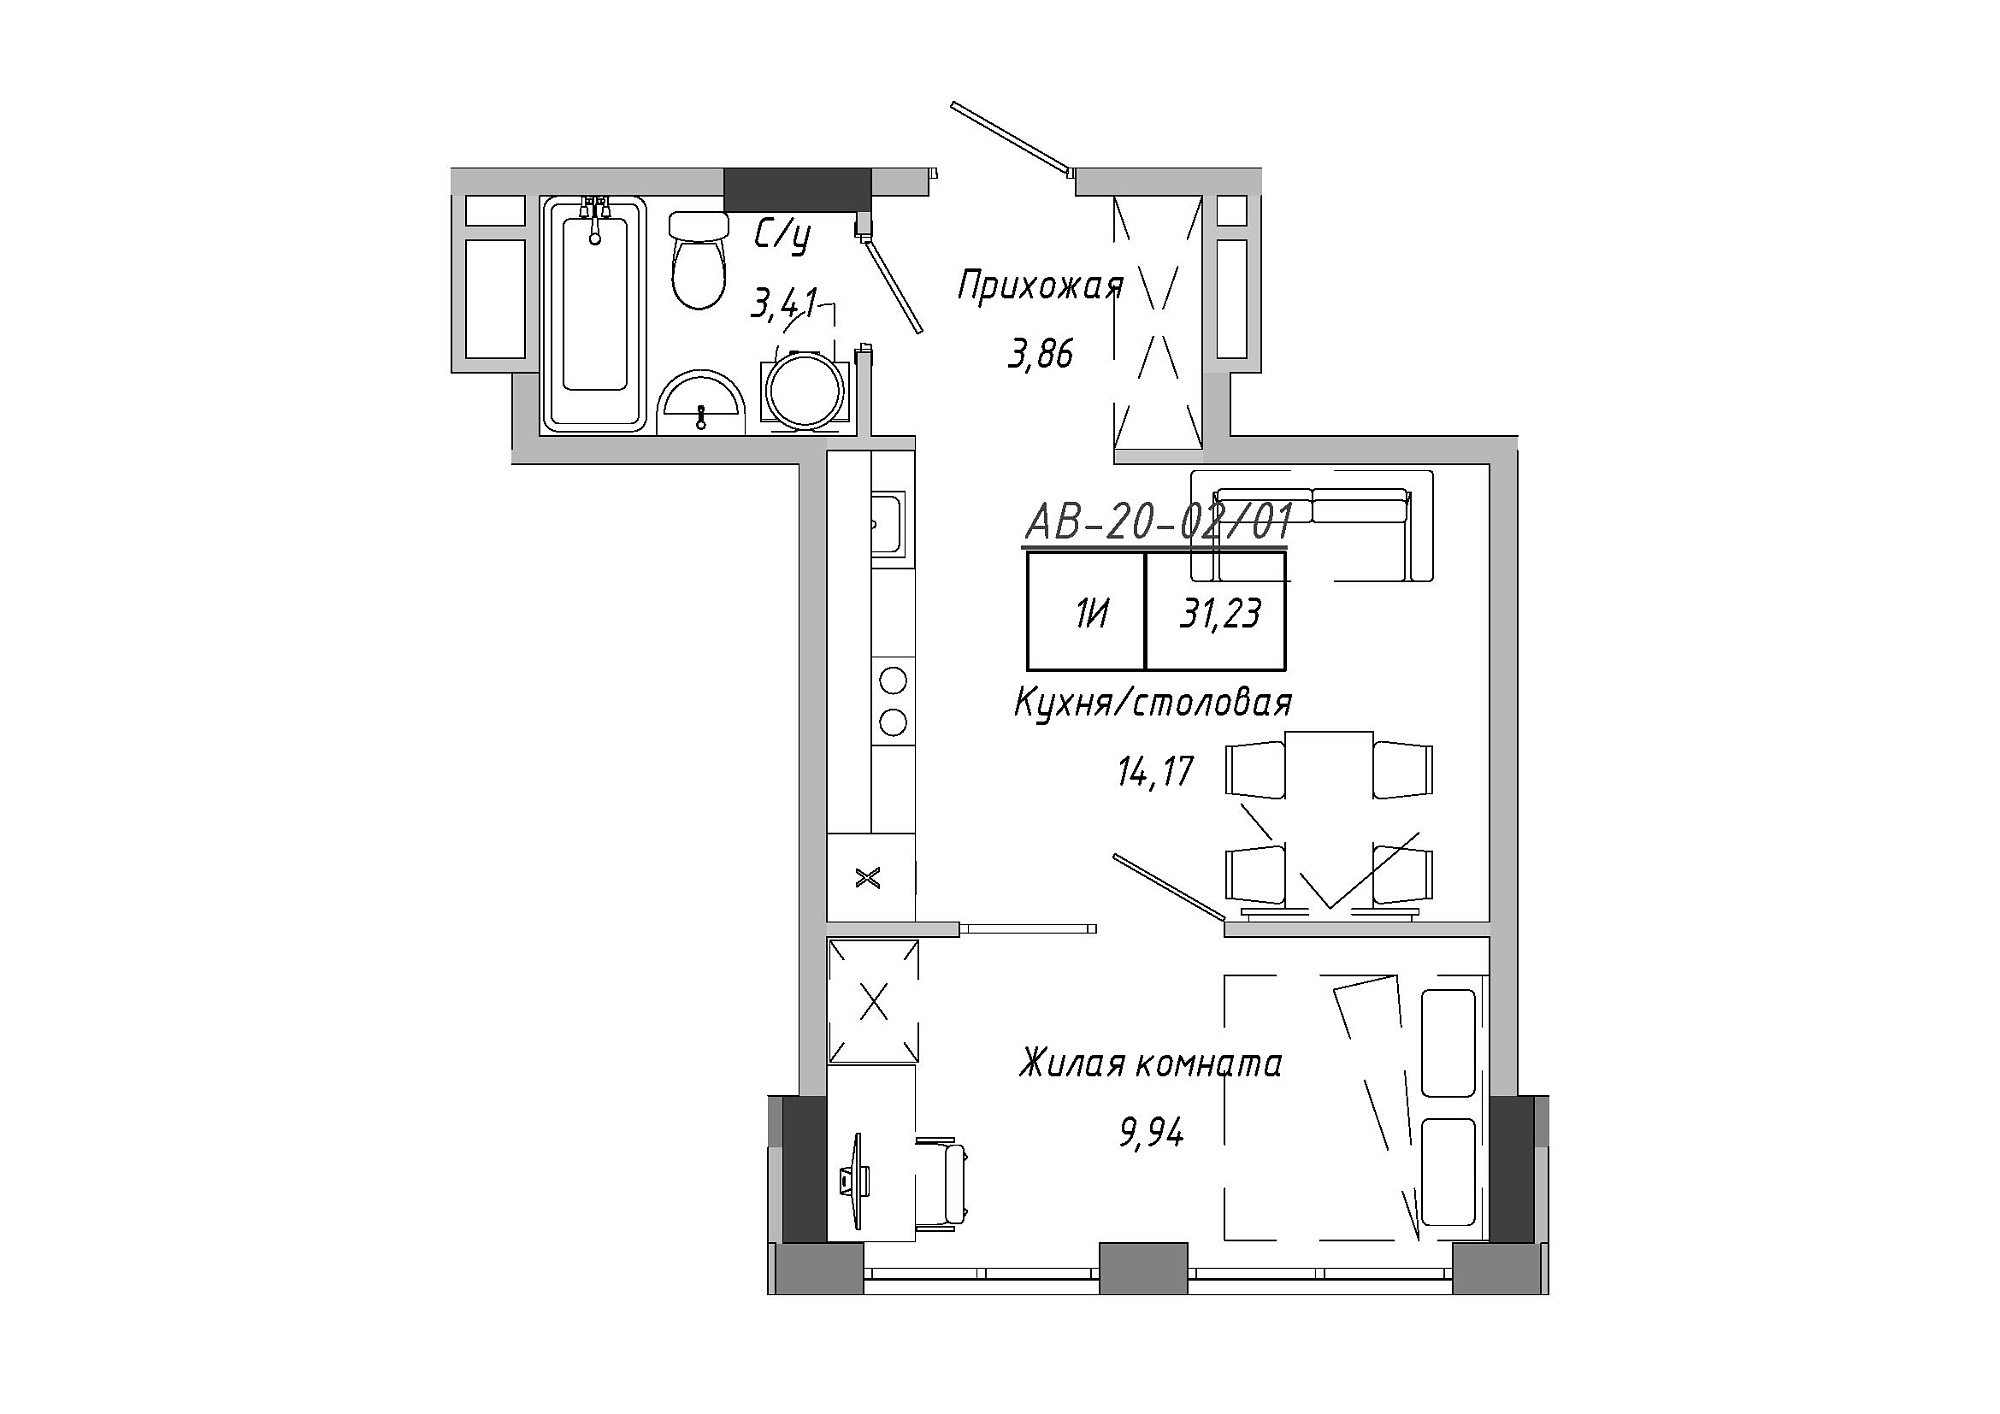 Планировка 1-к квартира площей 31.23м2, AB-20-02/00001.